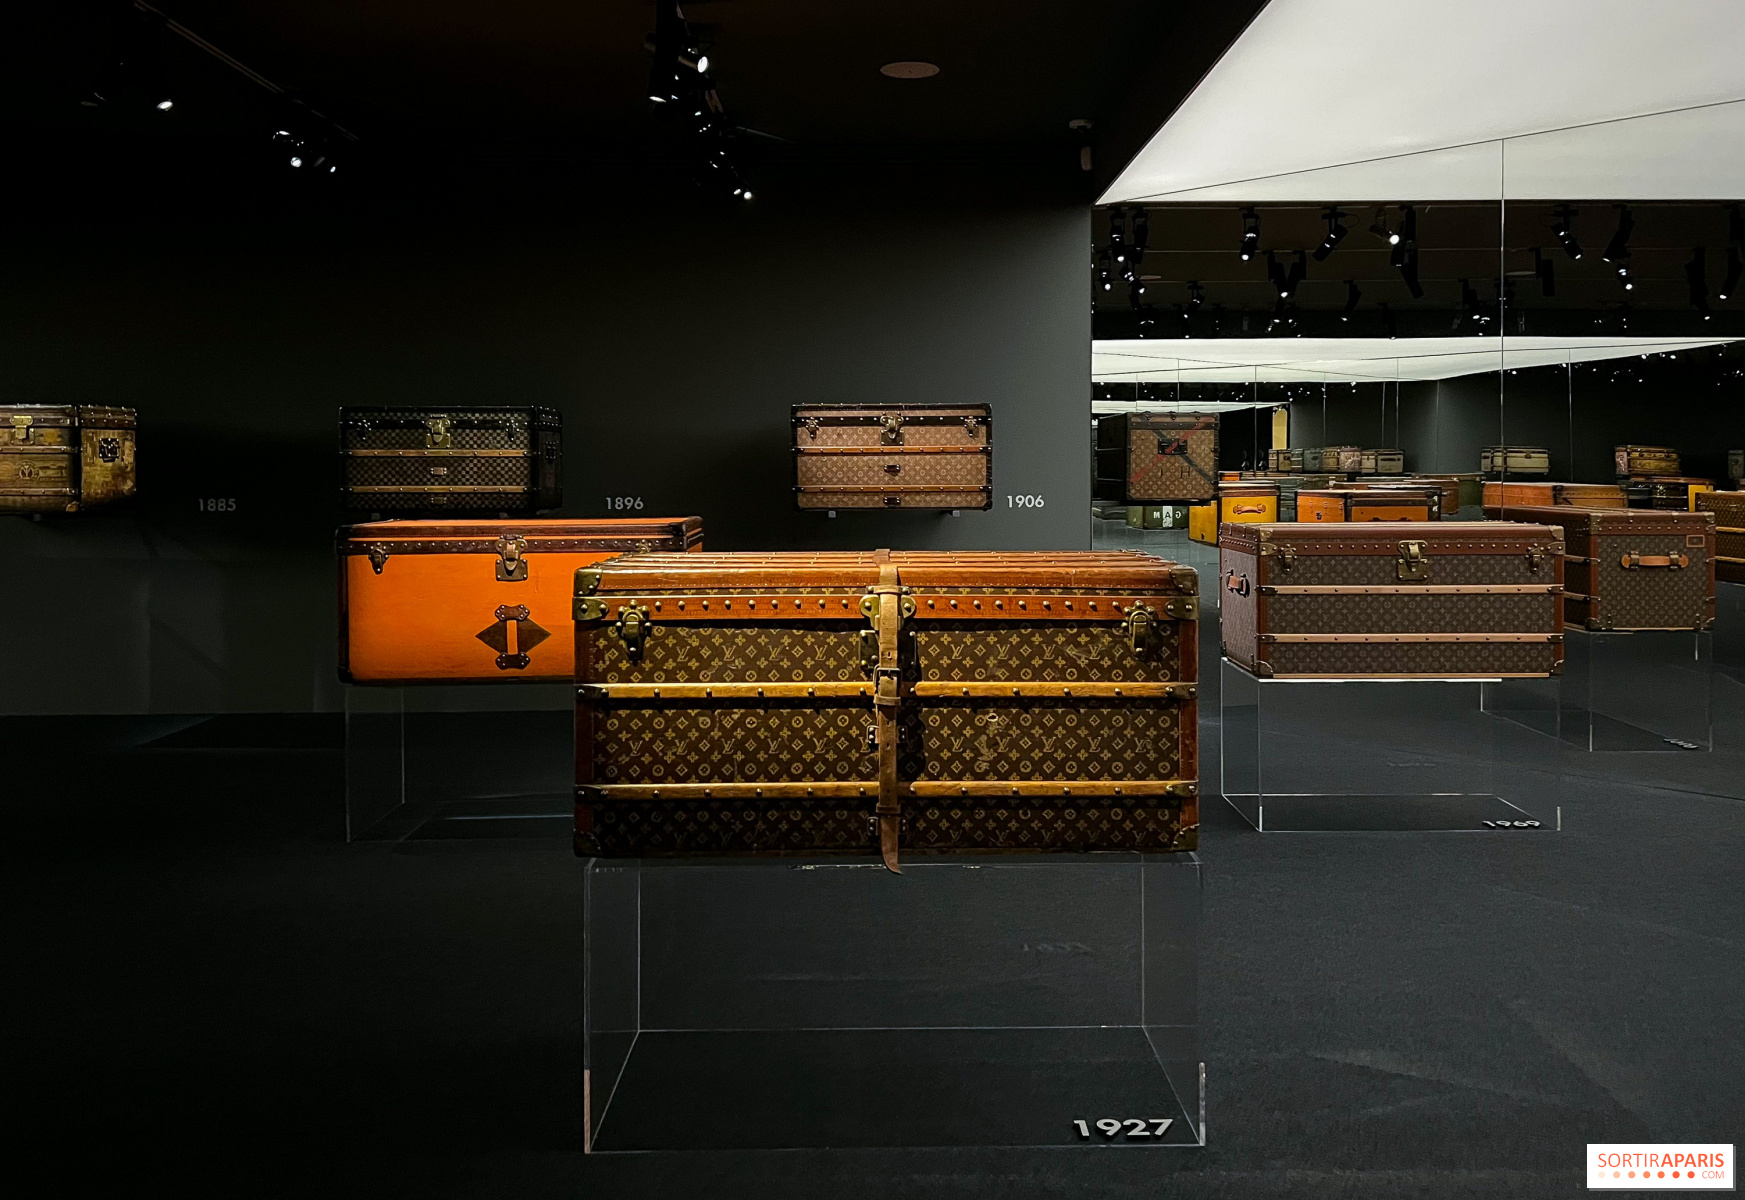 La Maison de famille de Louis Vuitton présente son exposition Malle Courrier